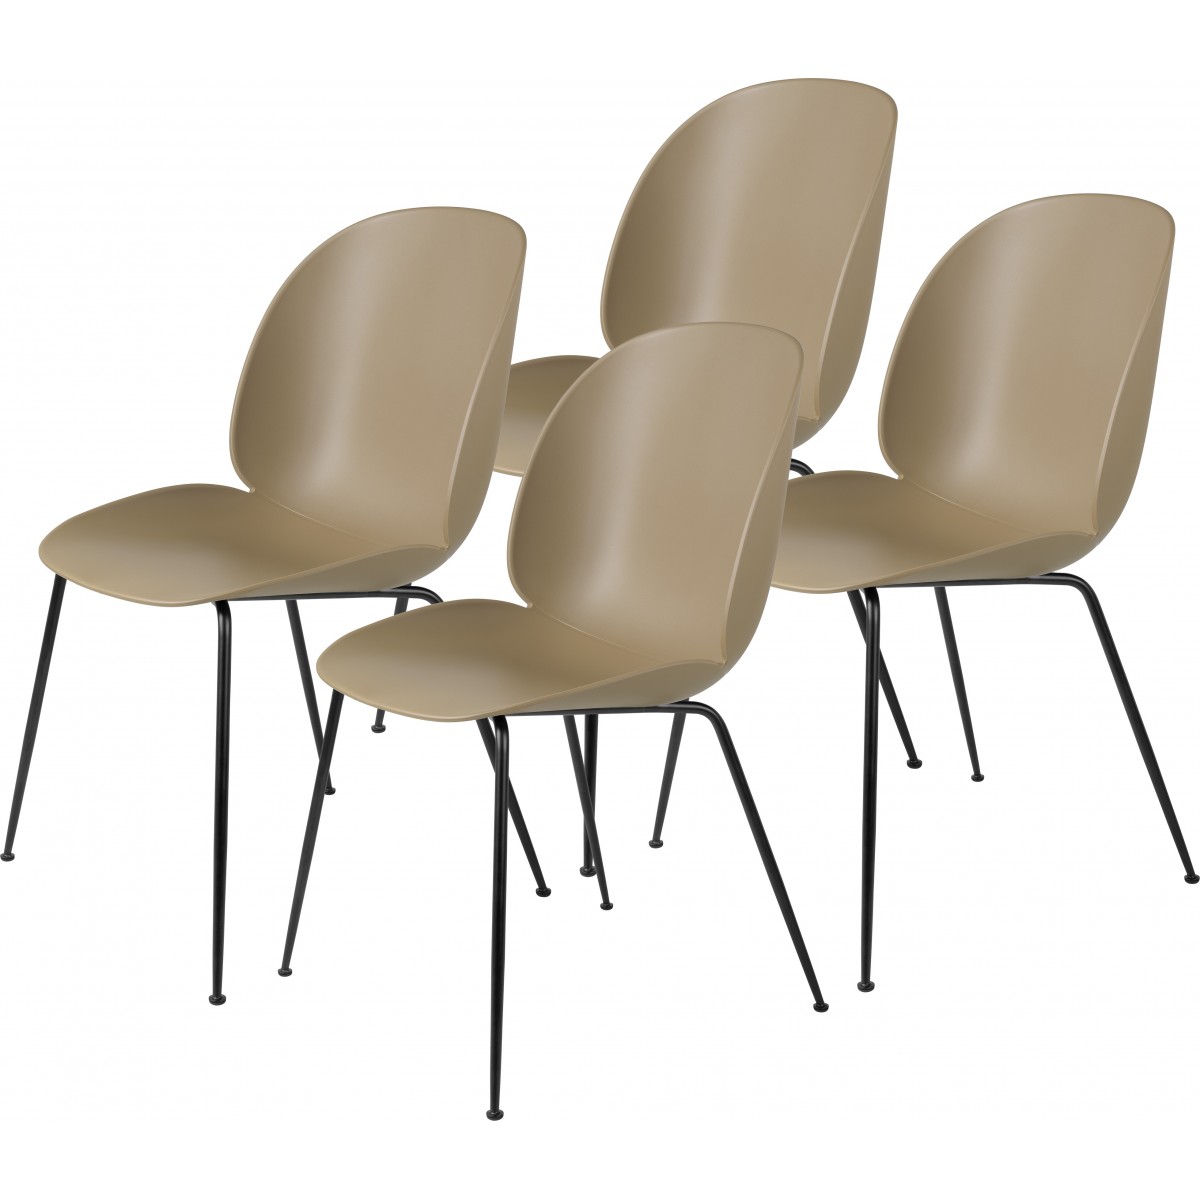 pack of 4 Beetle plastic chairs - pebble brown - metal legs